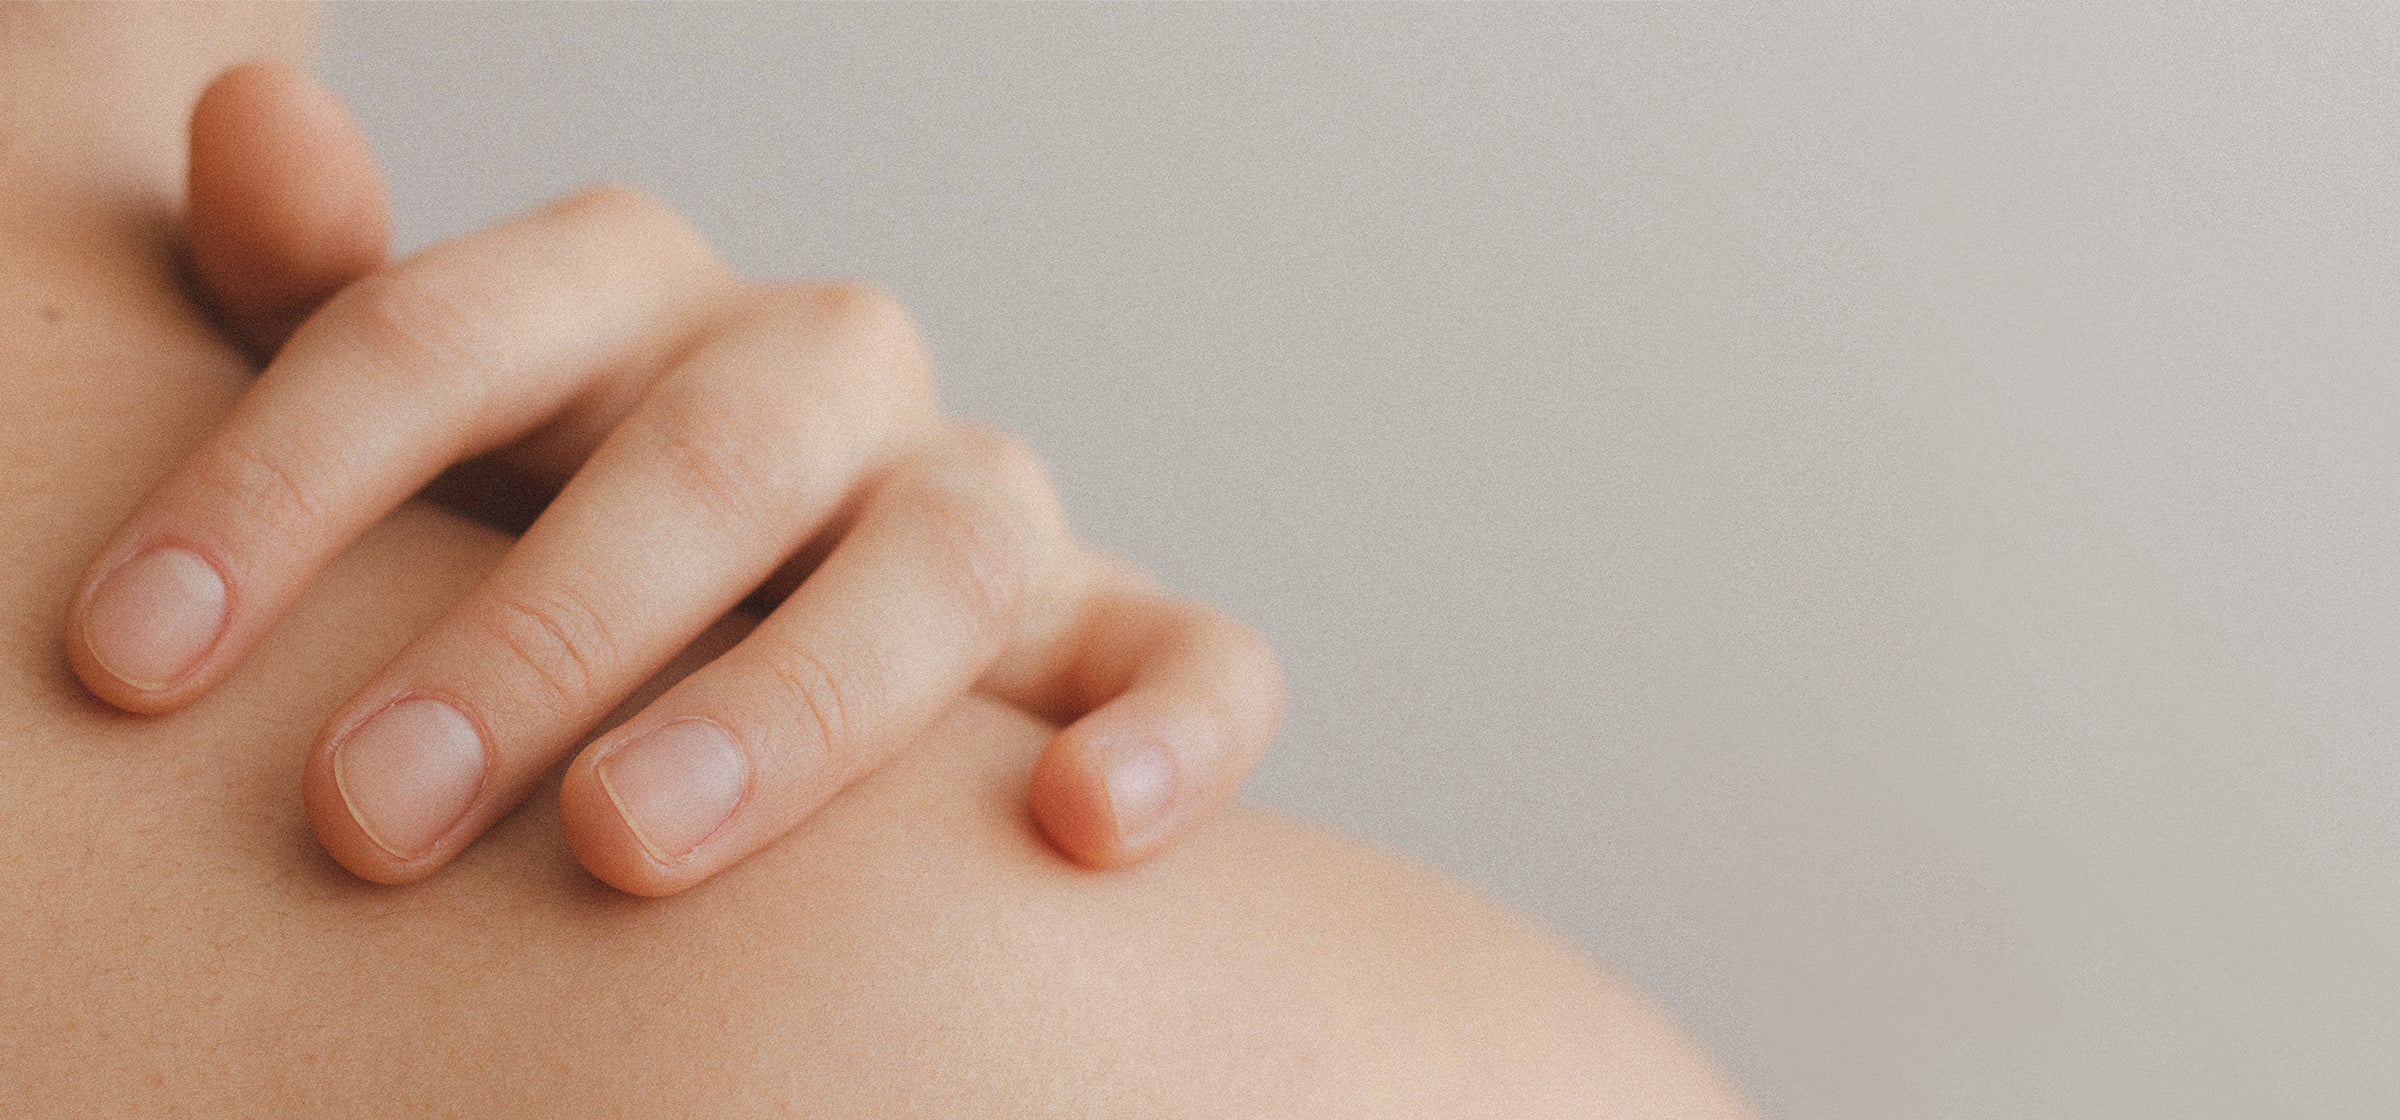 Gestresste Haut: 10 Tipps gegen Stresspickel & Hautjucken